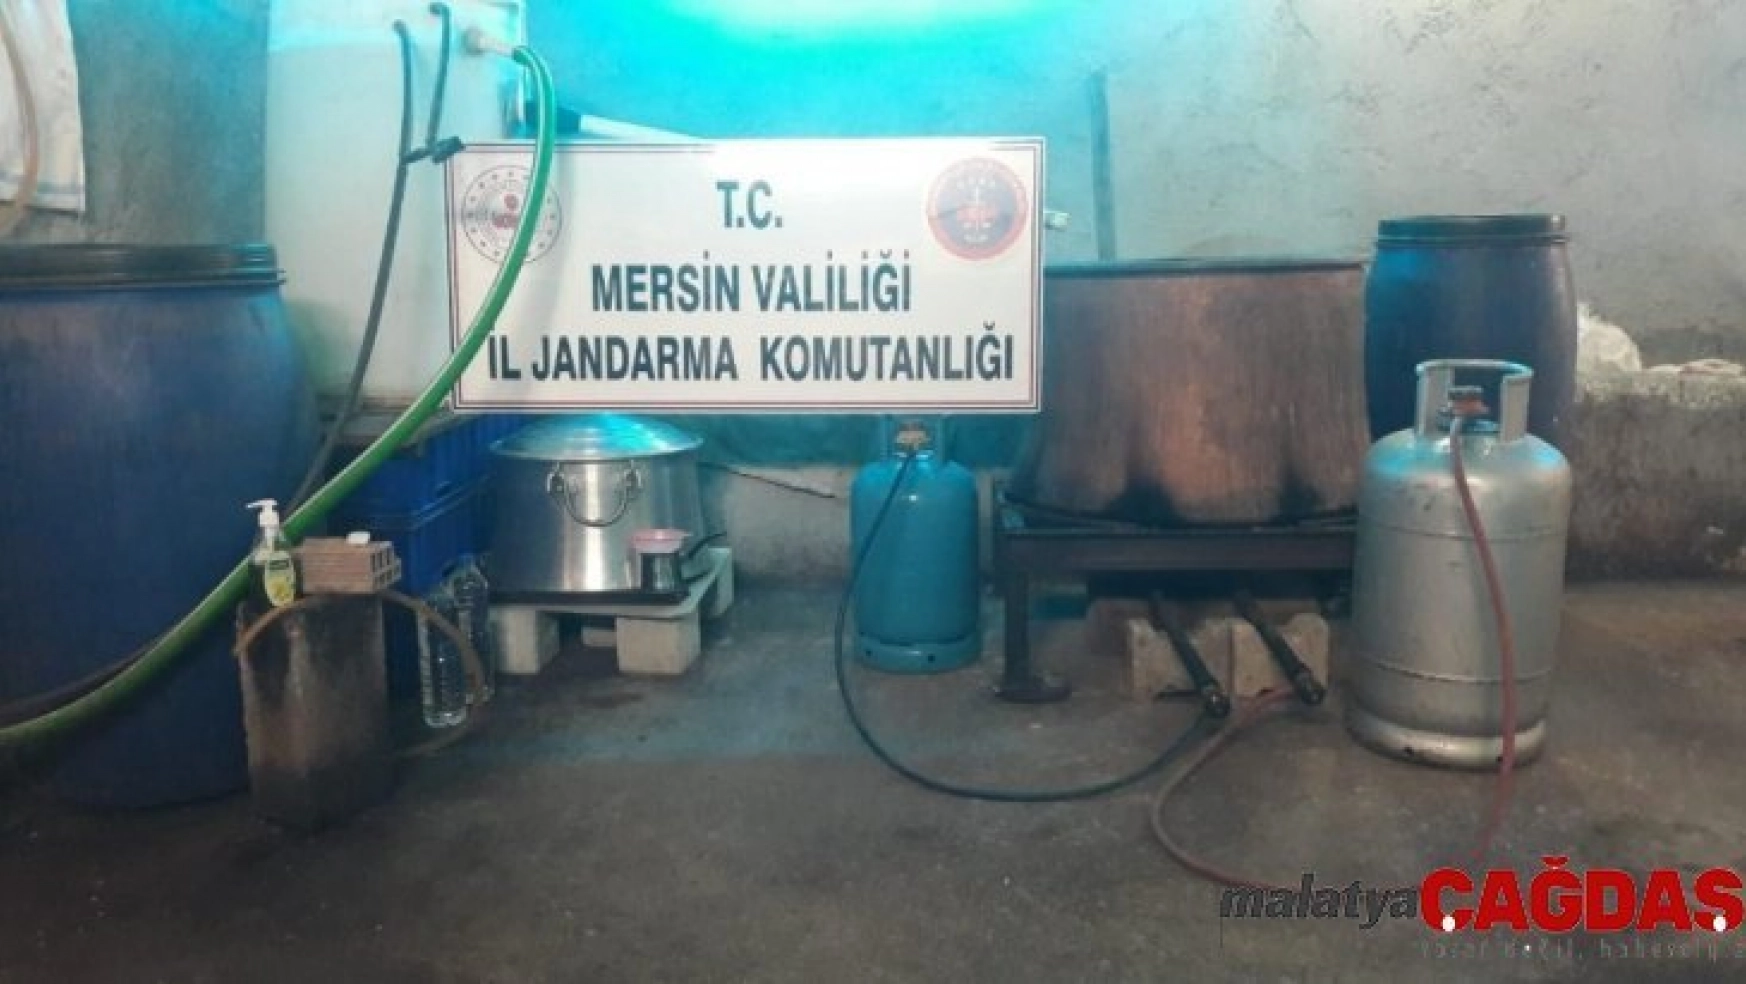 Tarsus'ta 540 litre kaçak içki ele geçirildi